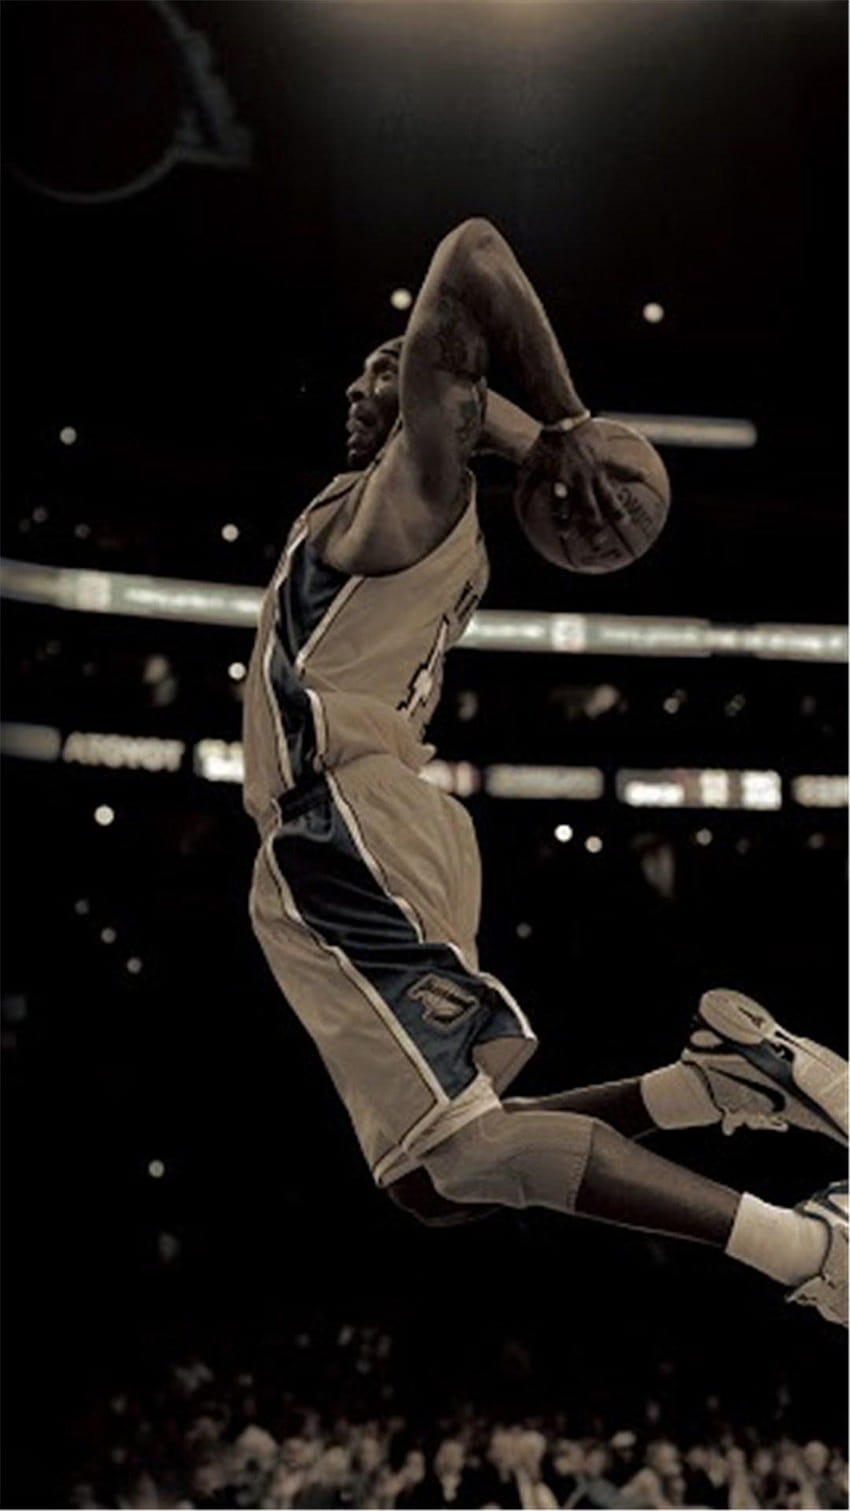 Thể hiện đẳng cấp và sự yêu mến với Bryant, Kobe, cũng như những ngôi sao thể thao của NBA thông qua ấn tượng của iPhone 8 và cả đấu trường thể thao. Tìm hiểu những Bryant Kobe NBA Sports Super Star Arena iPhone 8 Wallpaper để cảm nhận sự đẳng cấp này.